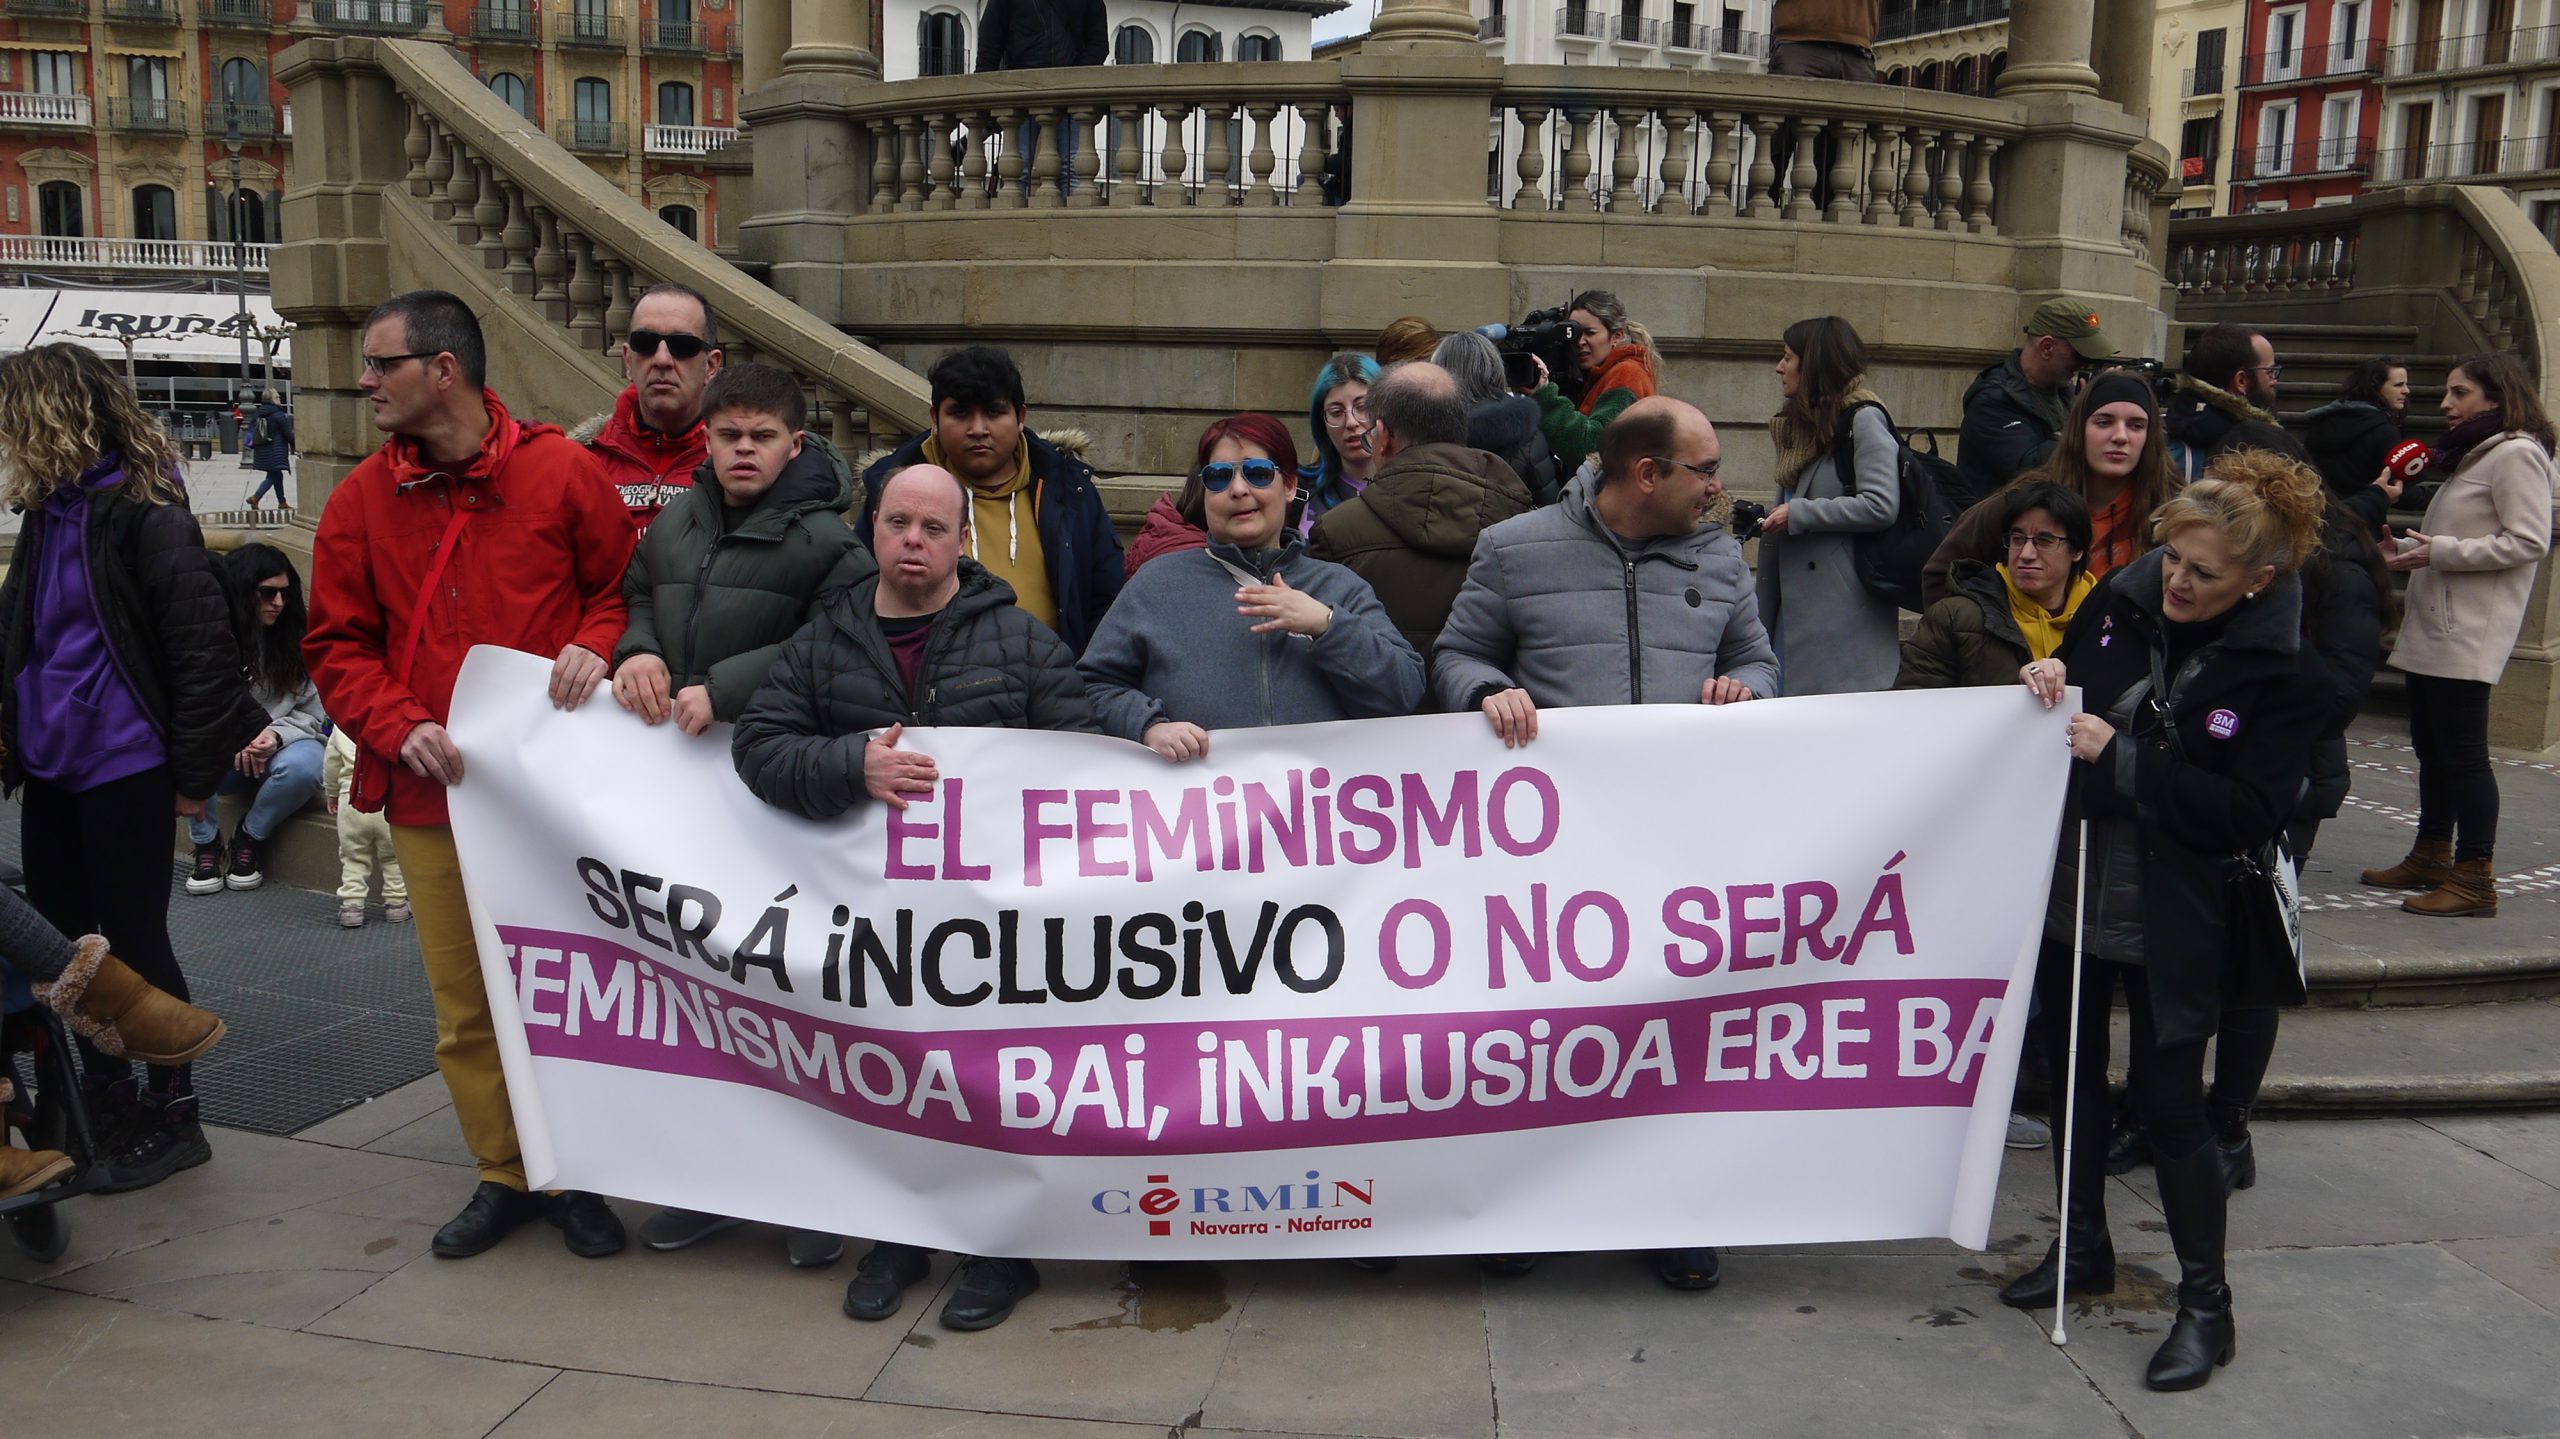 La pancarta lee, en castellano y en euskera: "El feminismo será inclusivo o no será".